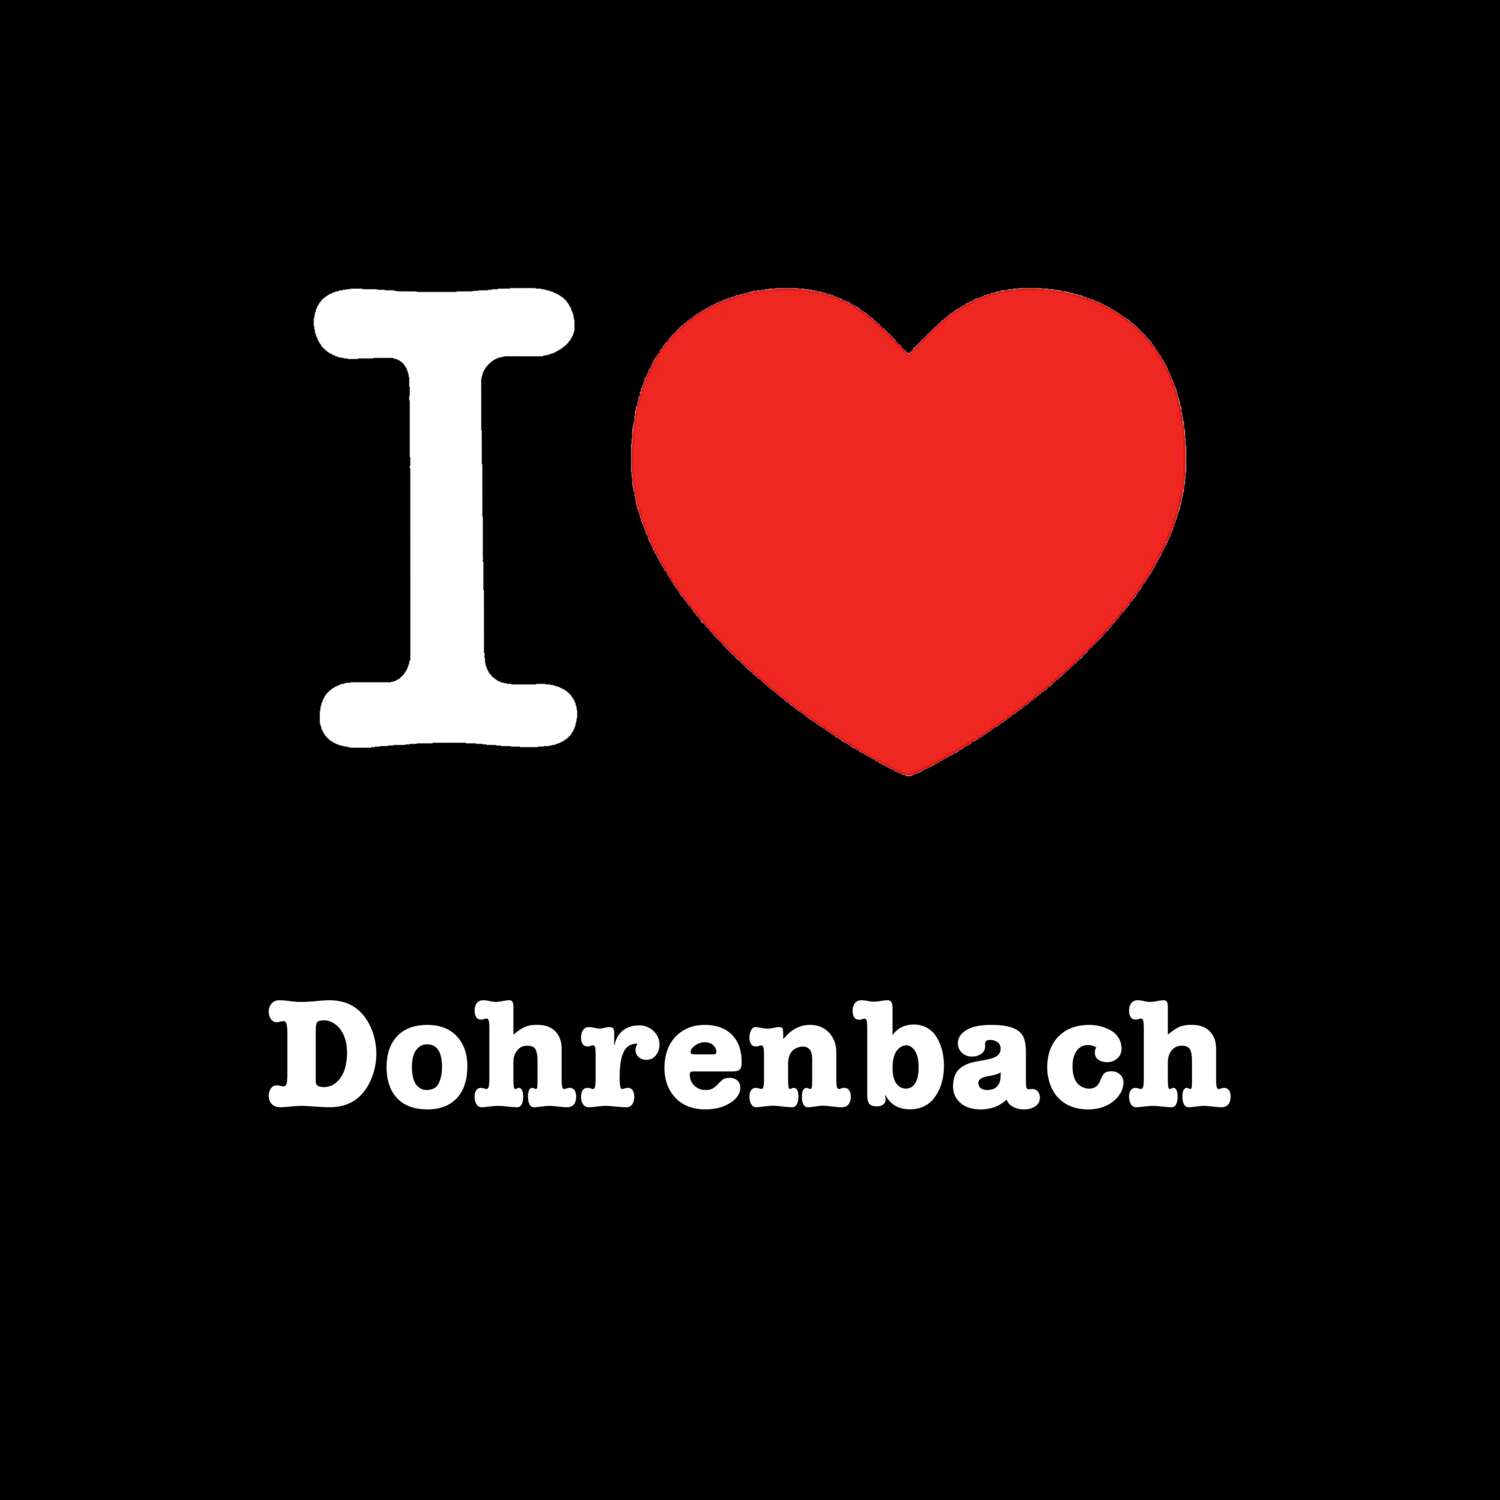 Dohrenbach T-Shirt »I love«